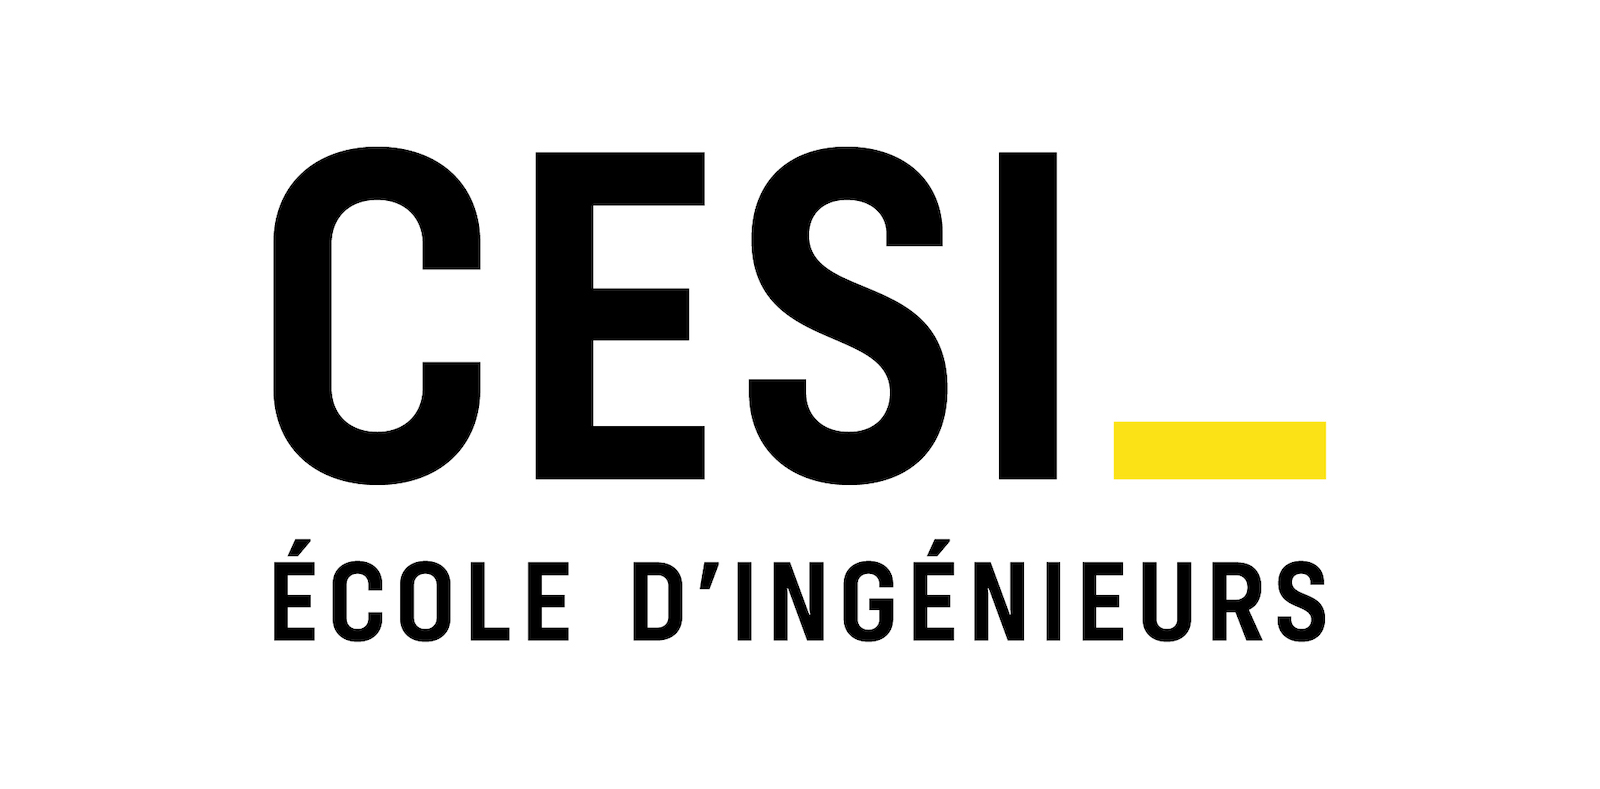 CESI - ÉCOLE D'INGÉNIEURS